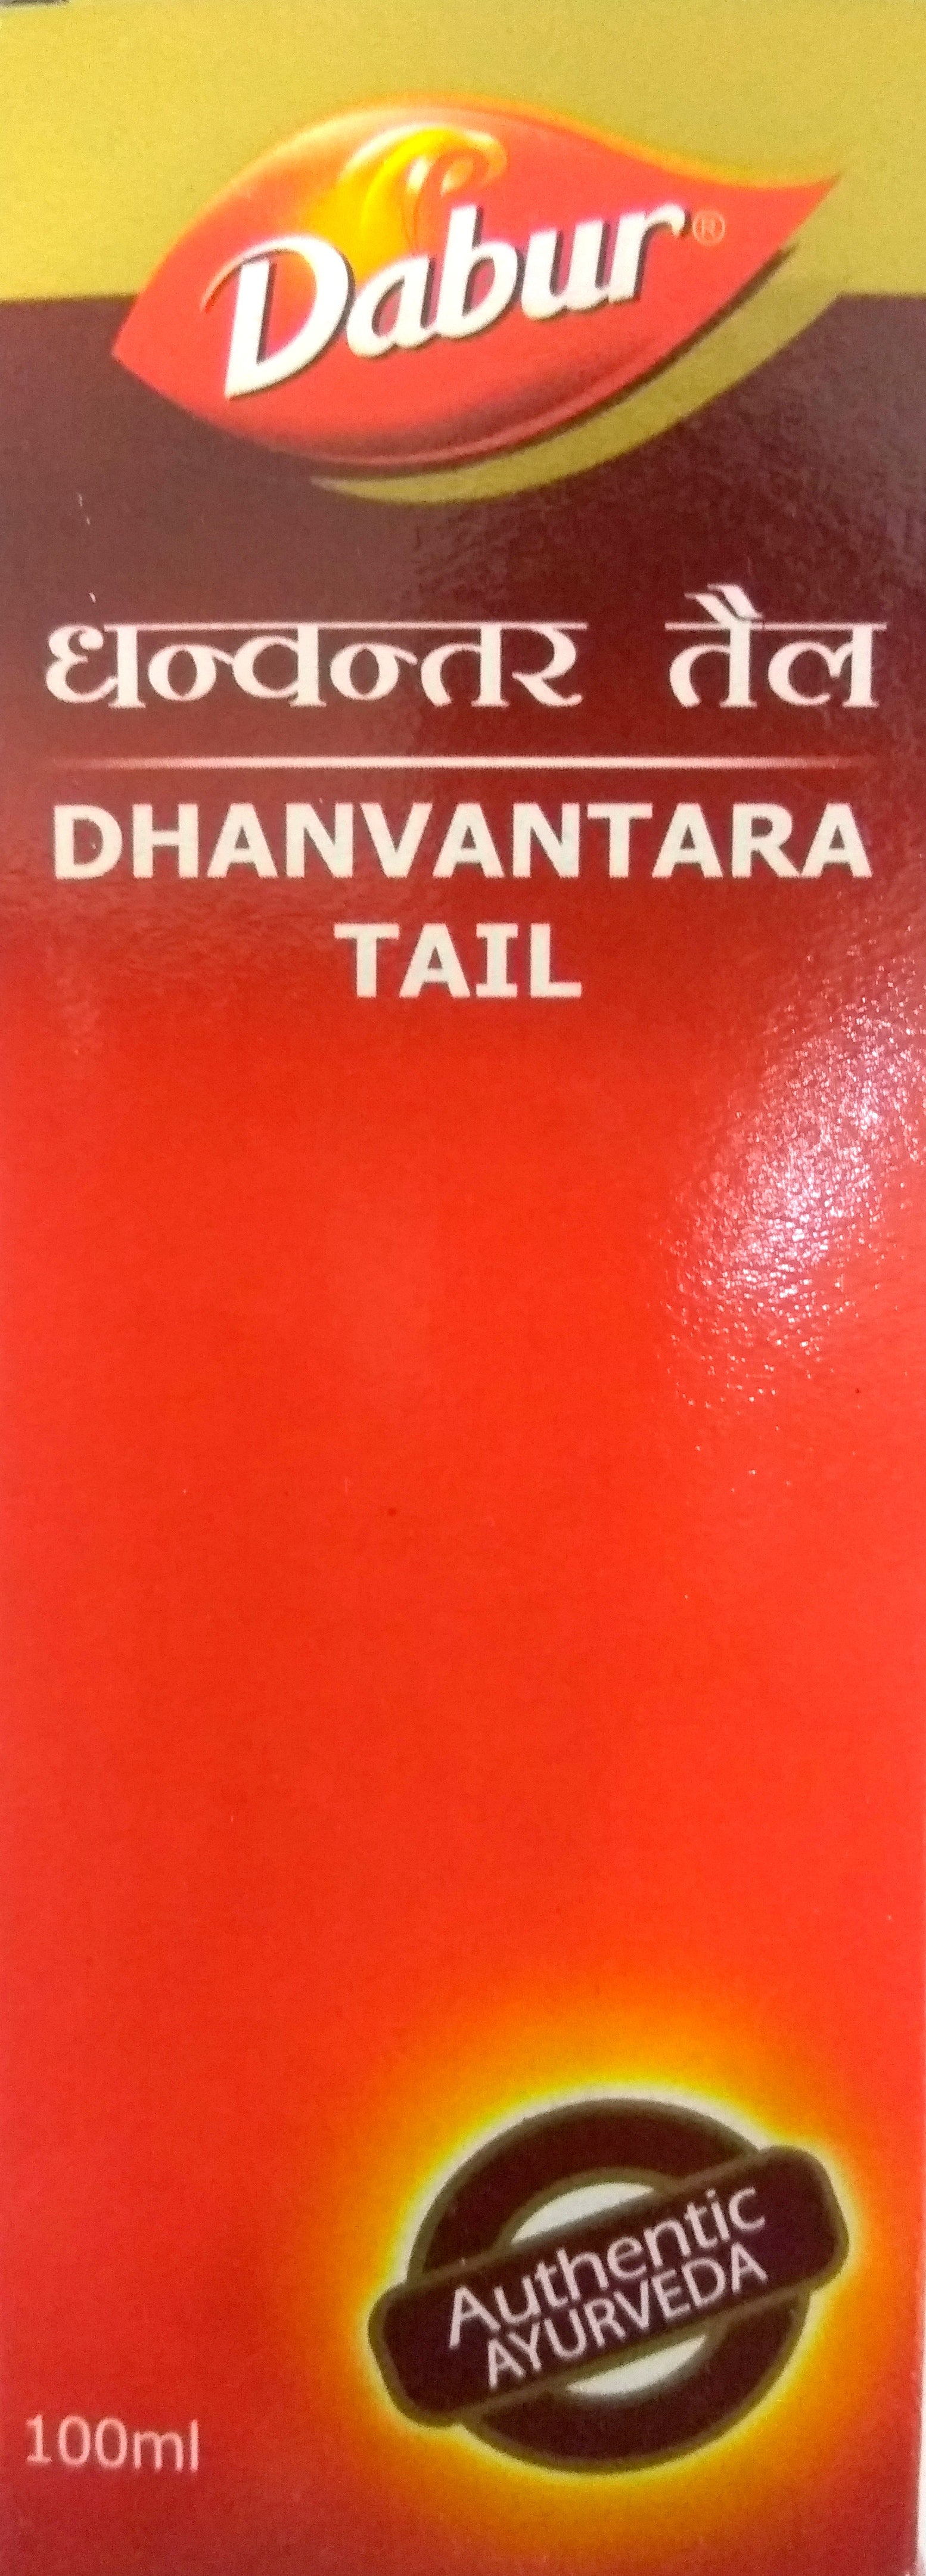 Shop Dabur Dhanvantara Tail 100ml at price 94.00 from Dabur Online - Ayush Care